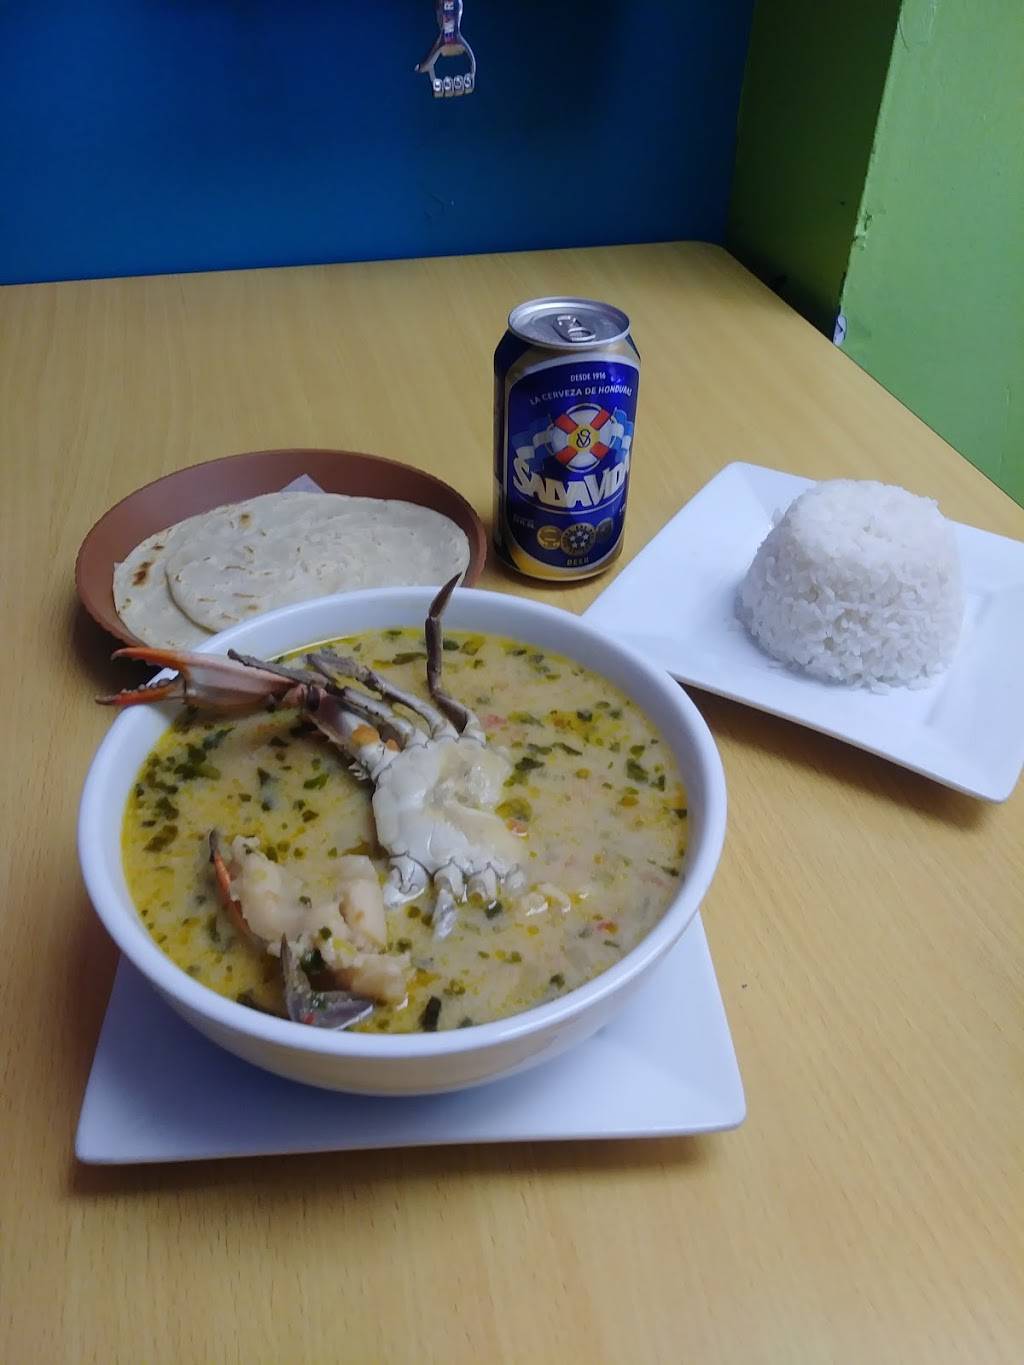 Pollo Chuco de Jam Pedro Sula | meal delivery | 506 48th St, Union City, NJ 07087, USA | 2018653000 OR +1 201-865-3000